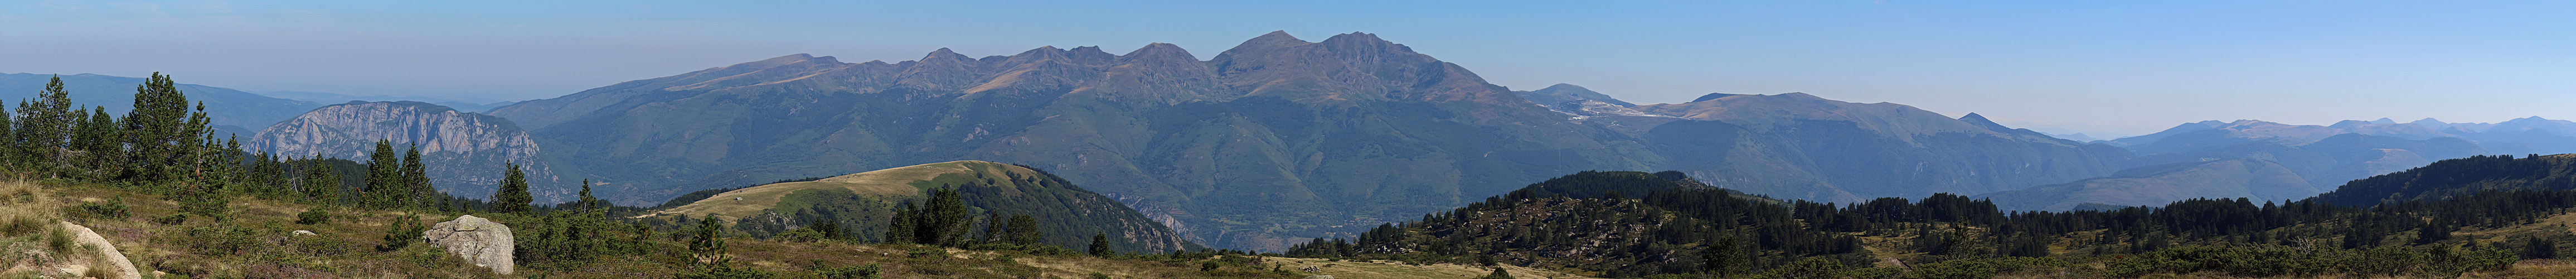 Plateau de Beille - Vers l est, Pic de St Barthelemy et la carrière de talc de Luzenac